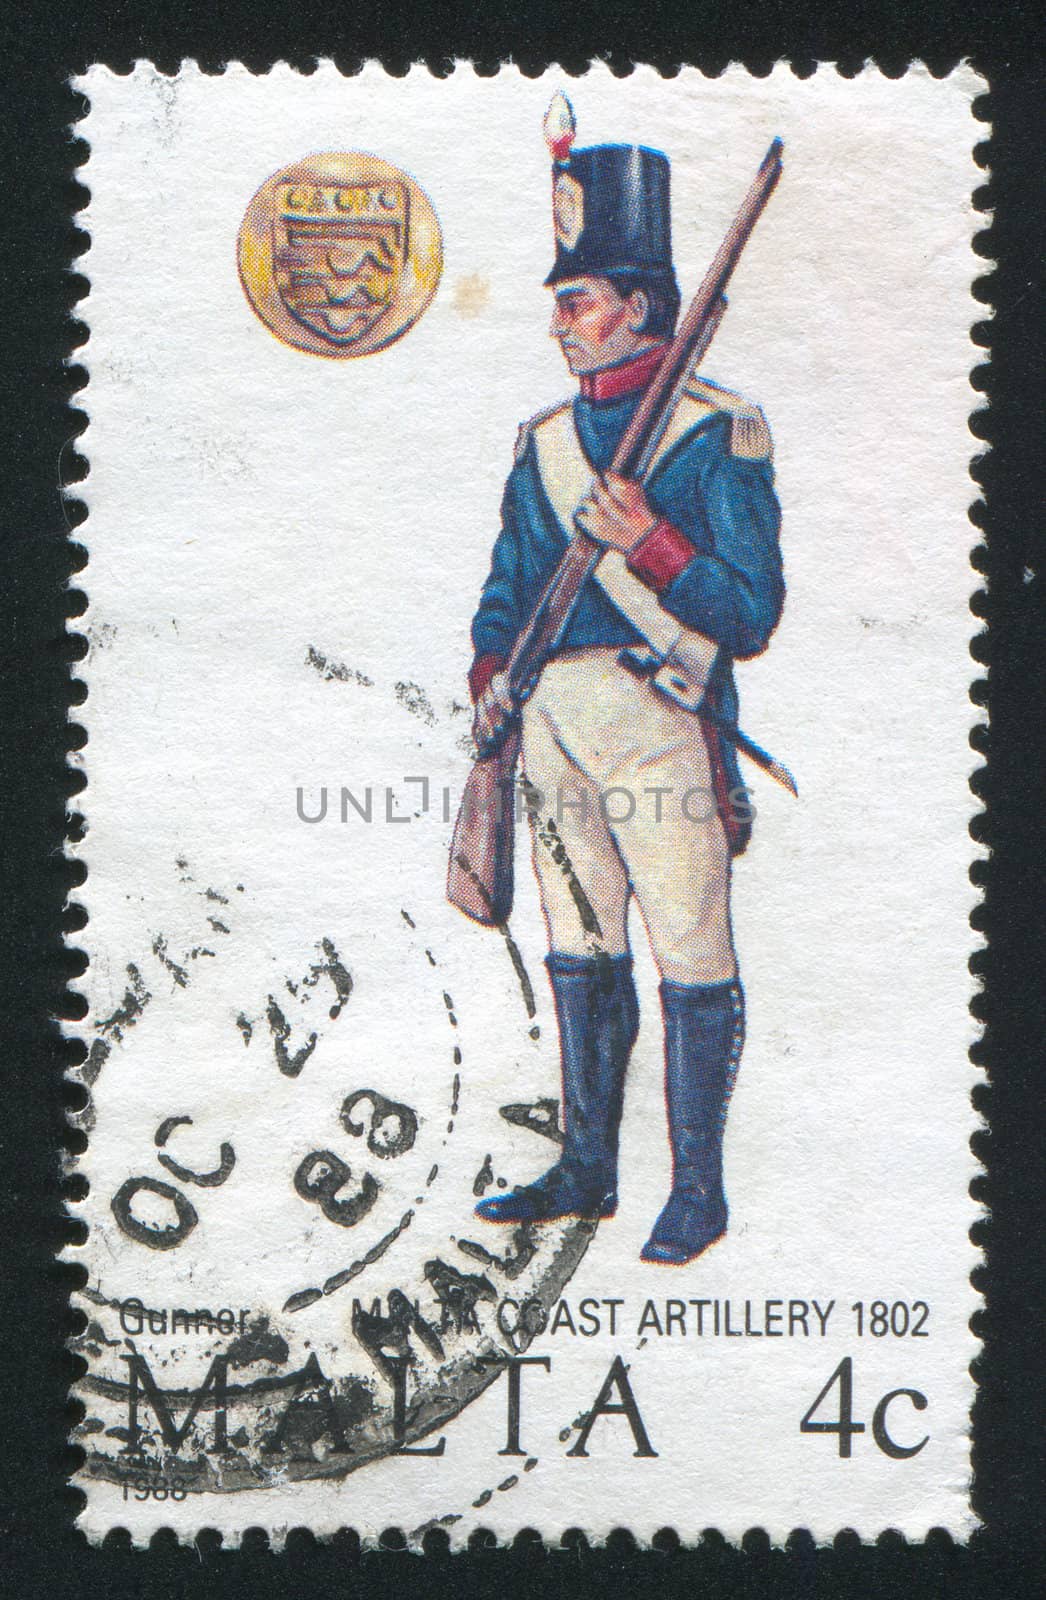 MALTA - CIRCA 1988: stamp printed by Malta, shows Coast Artillery Gunner, circa 1988